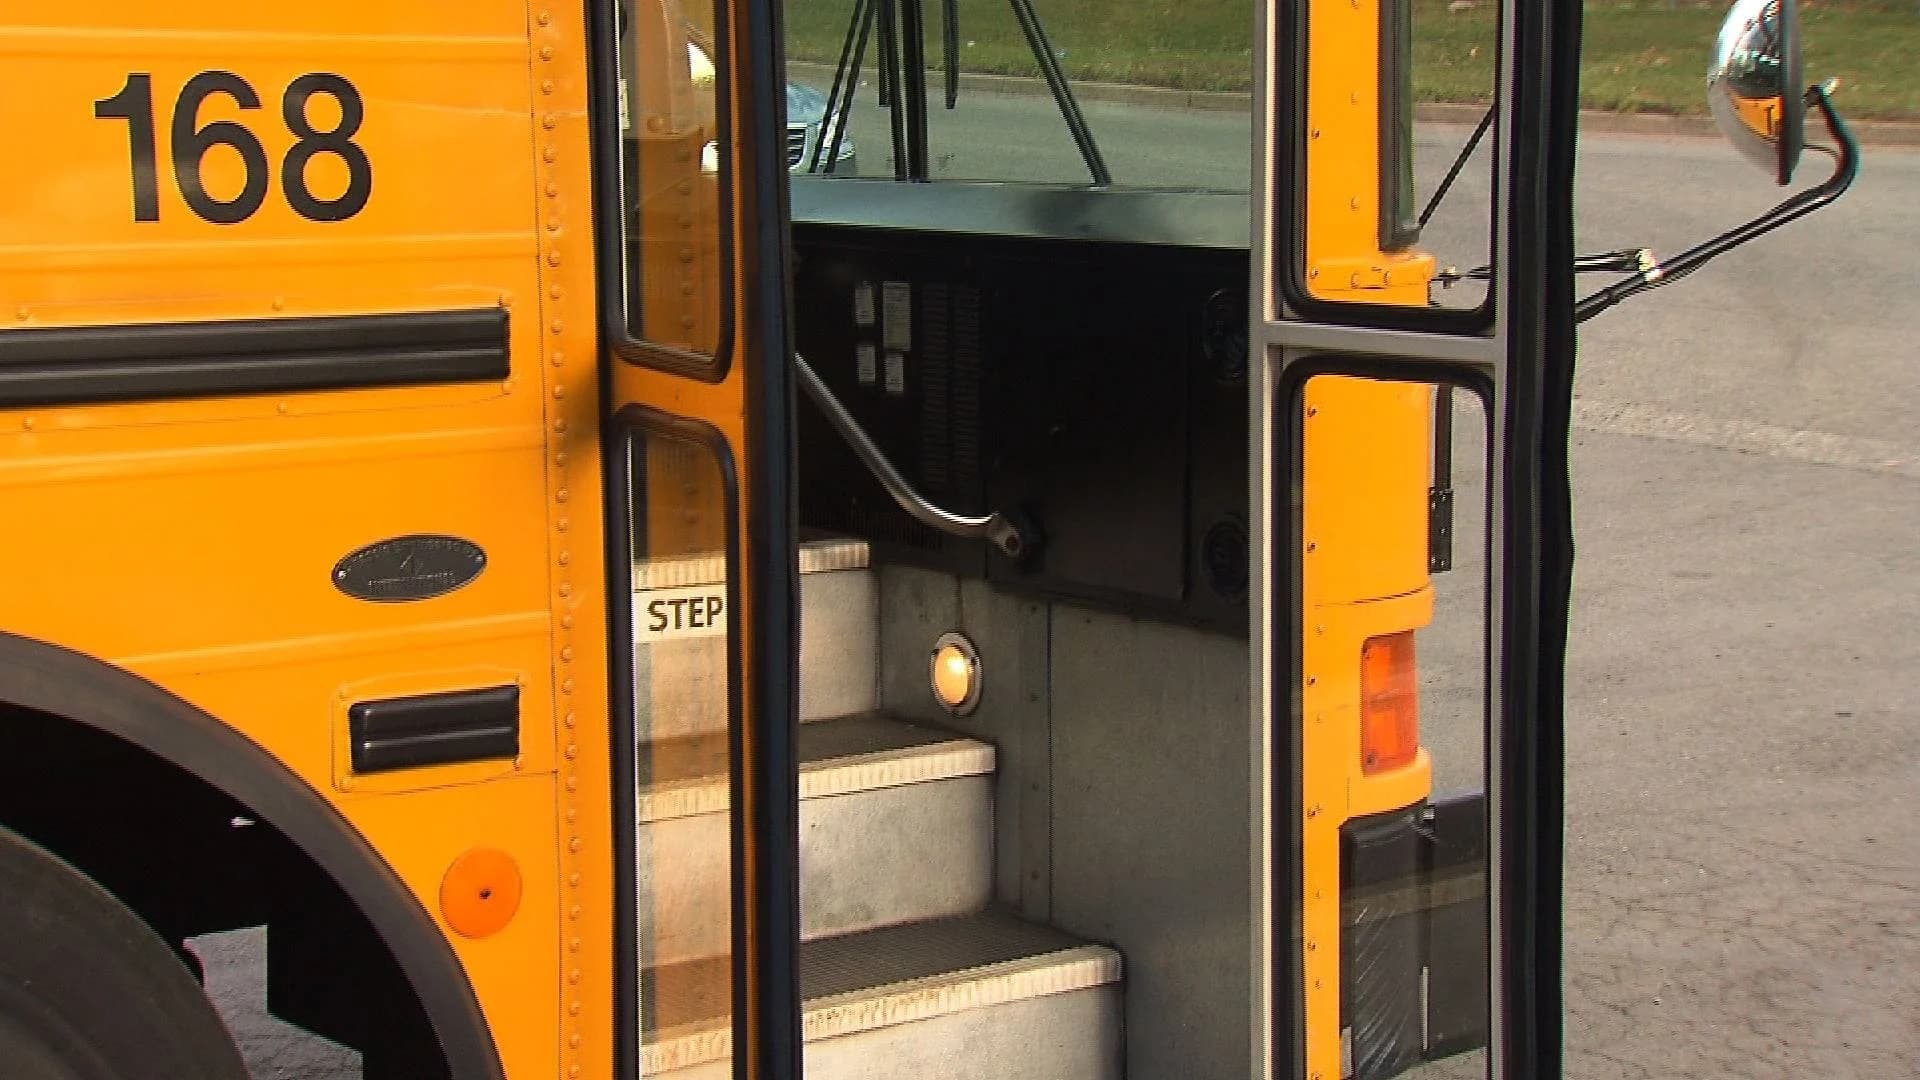 Report: US facing school bus driver shortage